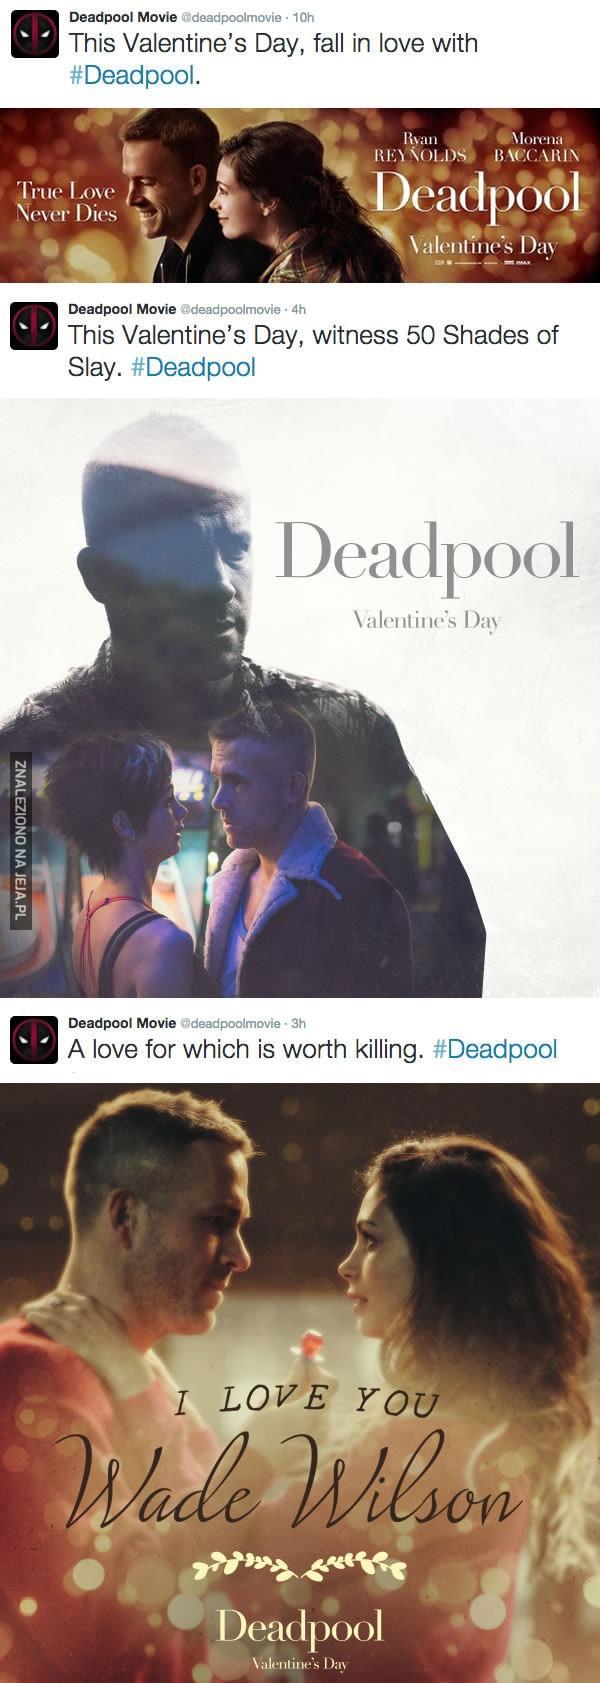 Najnowsze plakaty Deadpoola